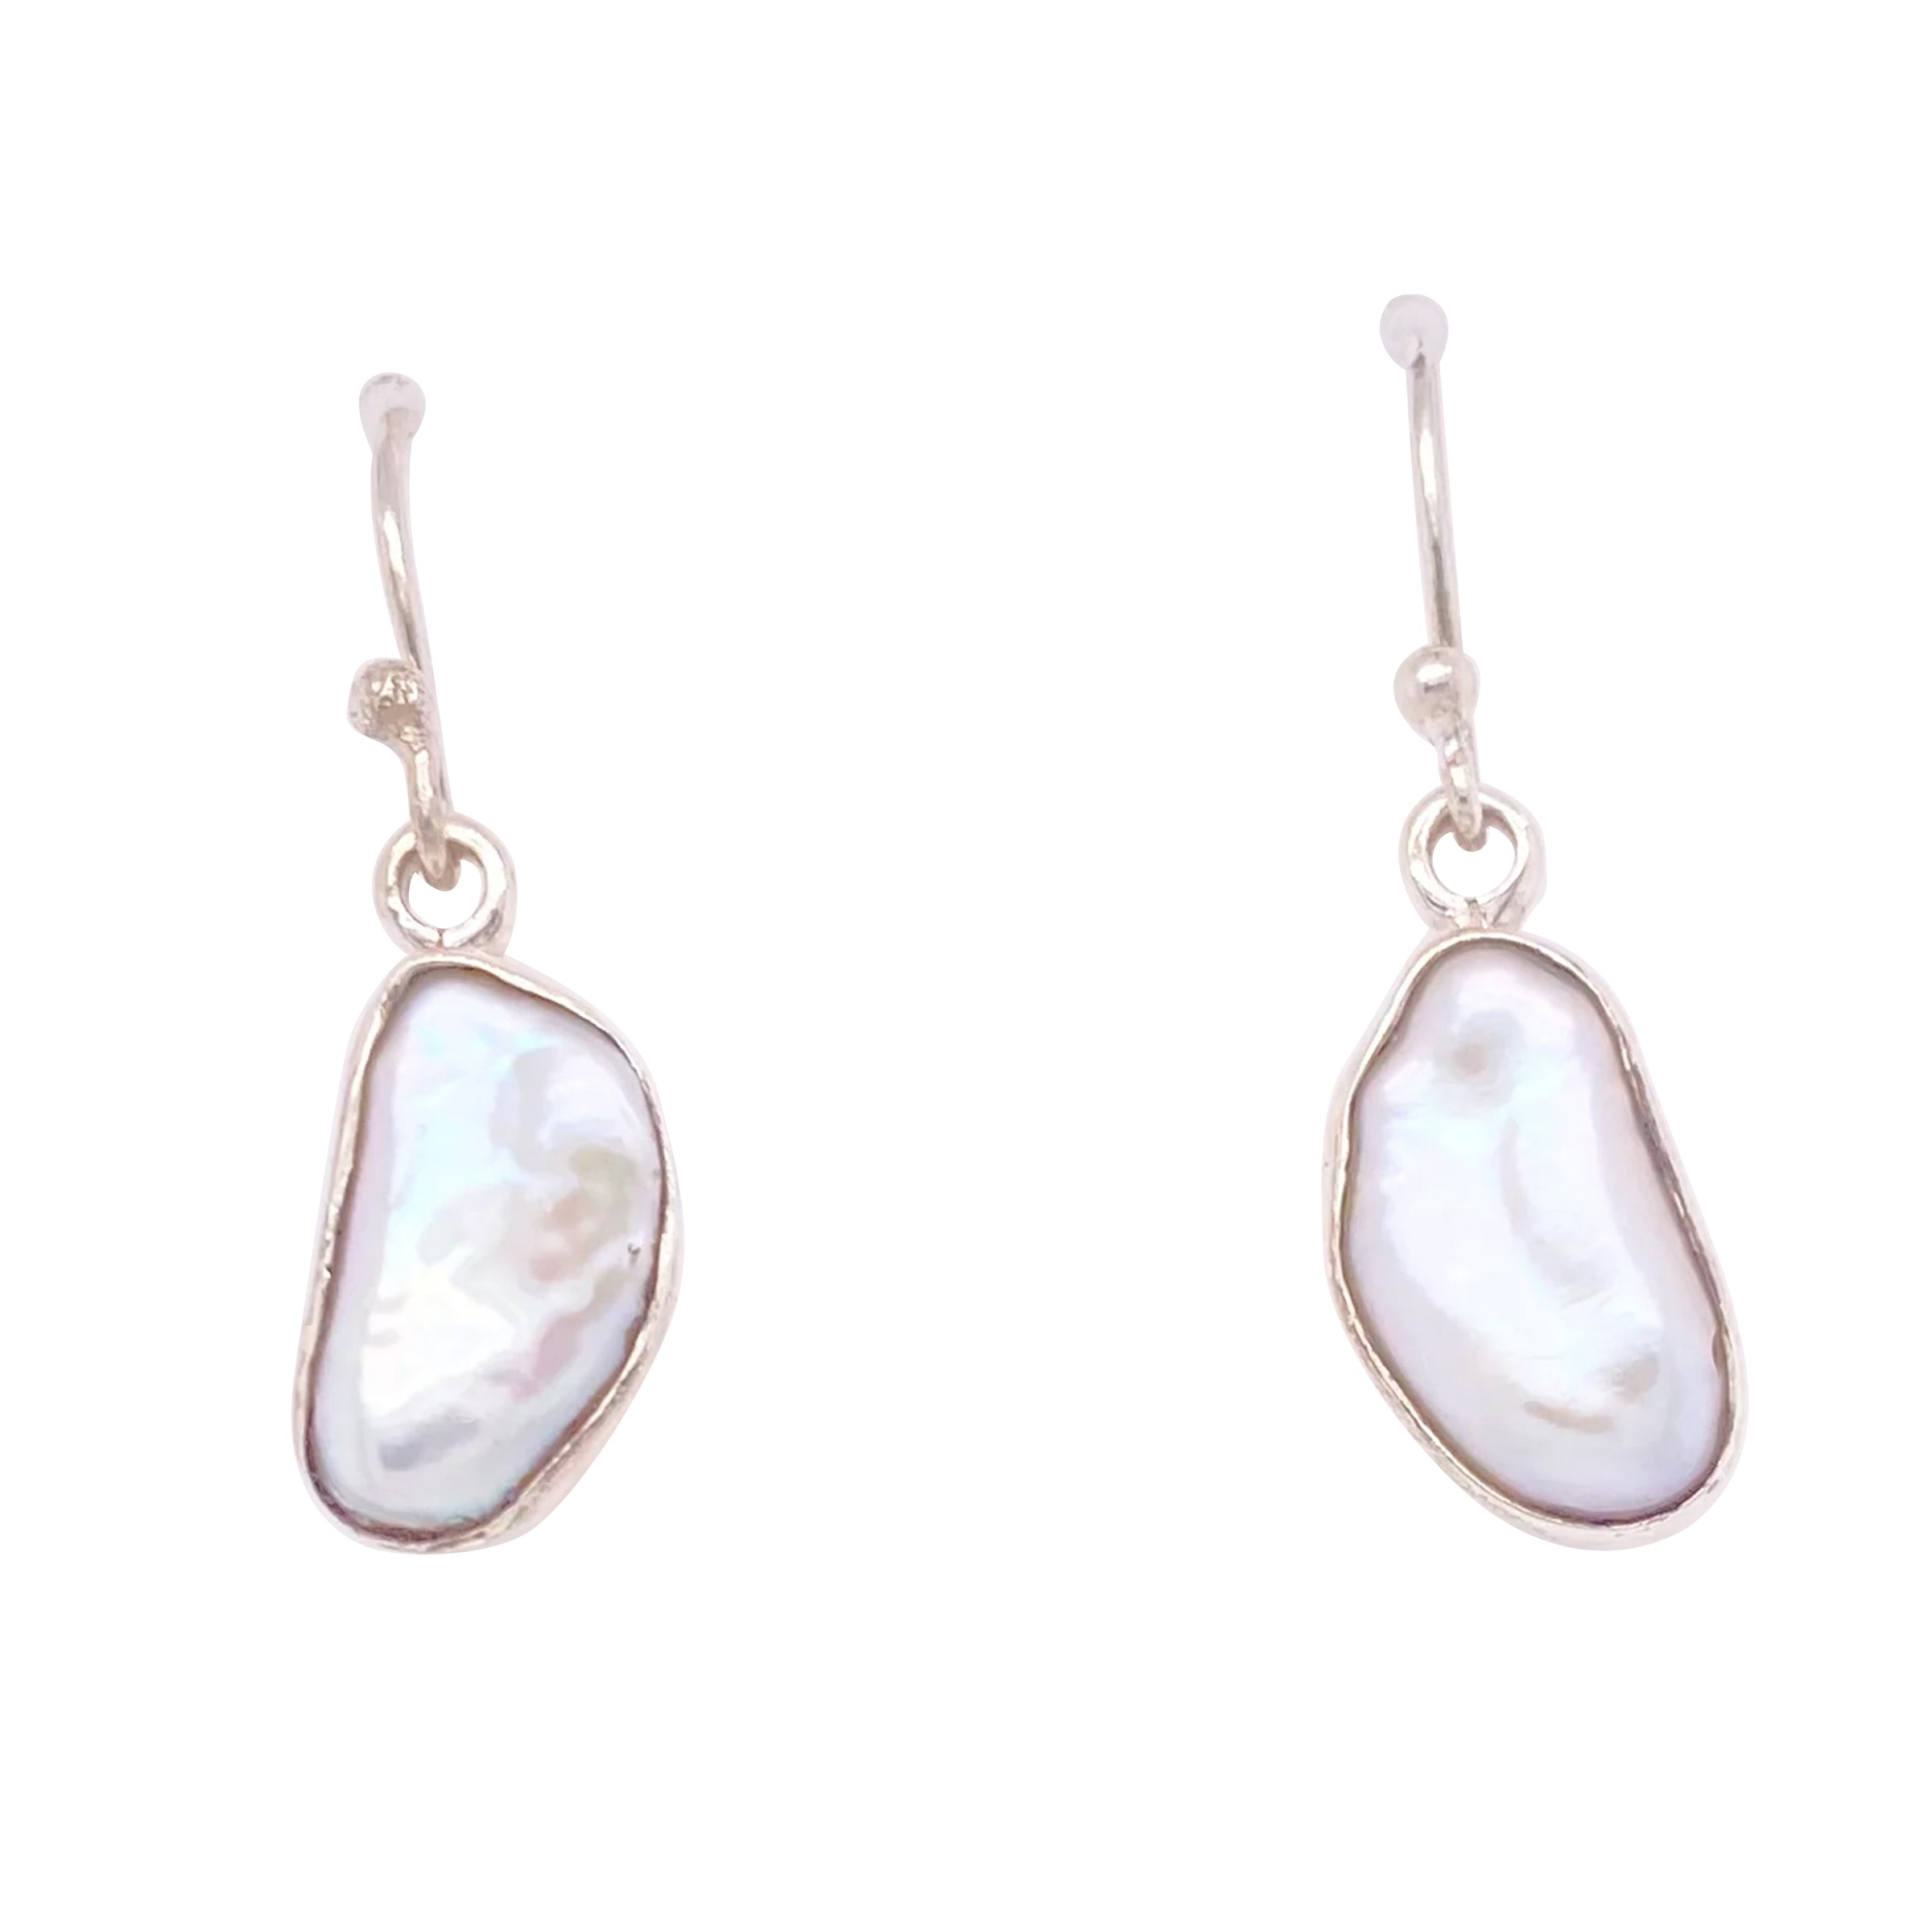 Baroque pearl hook earrings